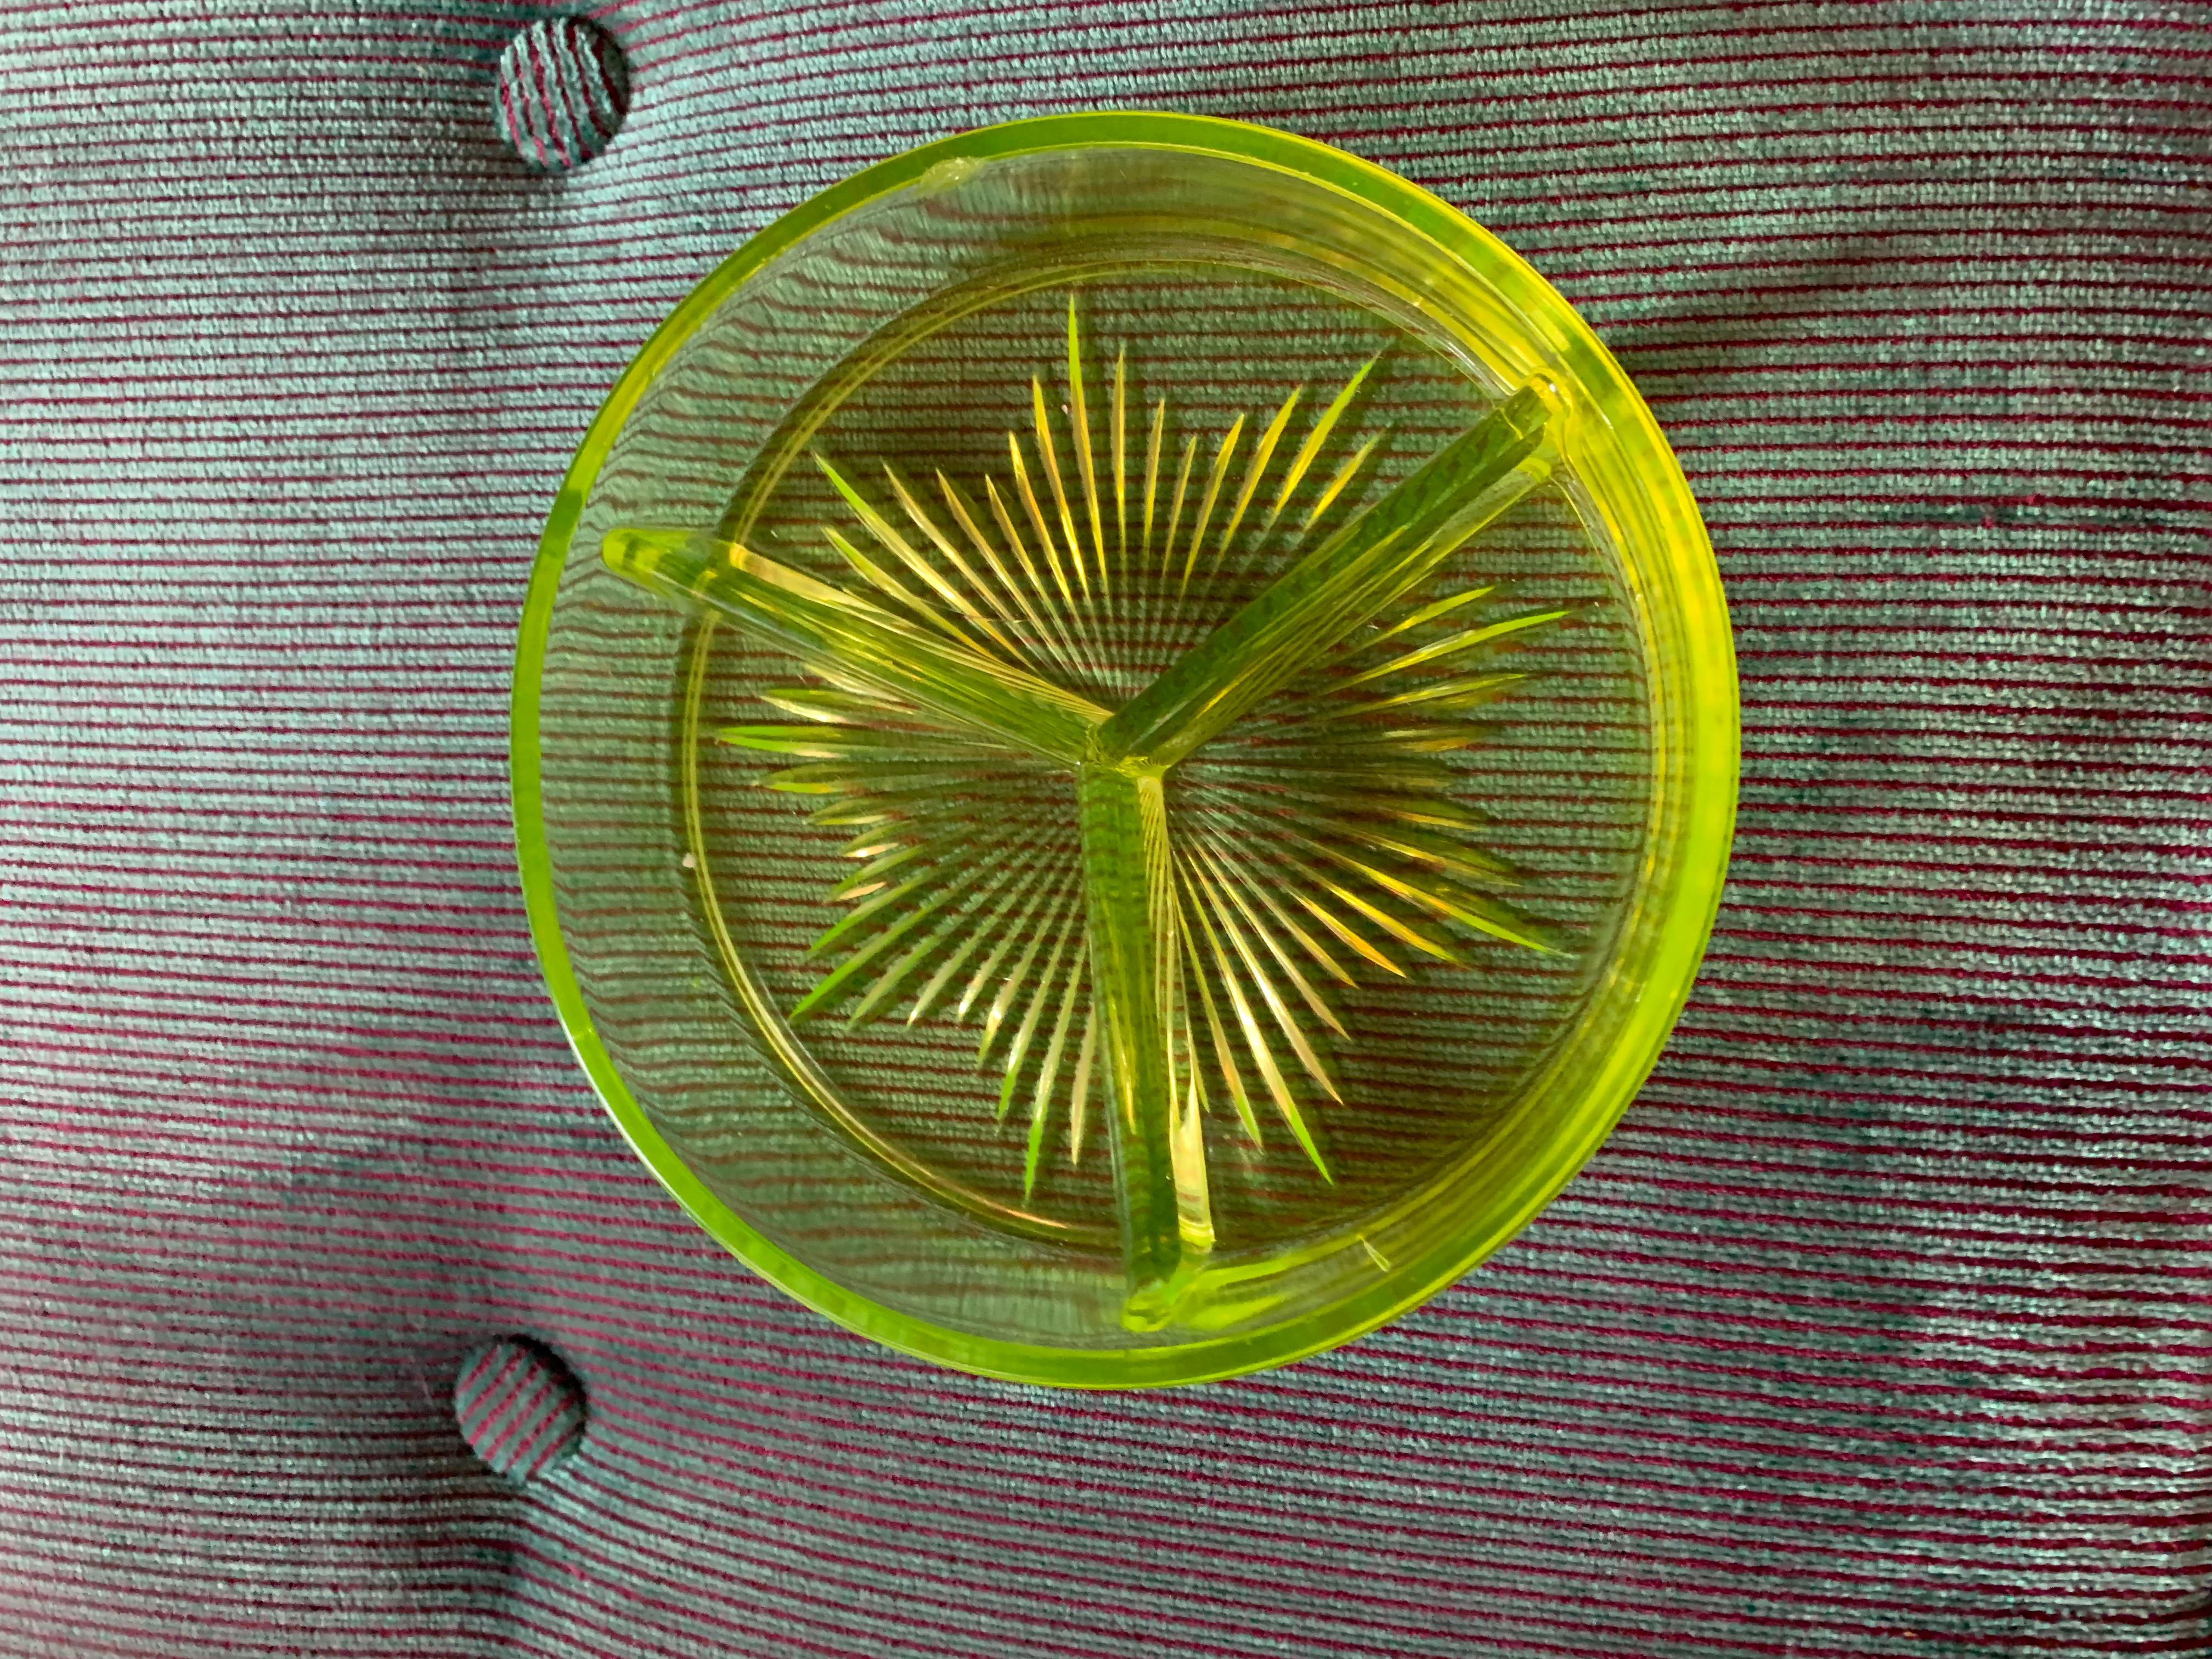 American Classical Antique Uranium Vaseline Depression Glass Tri-Partite Platter Server, 1920s